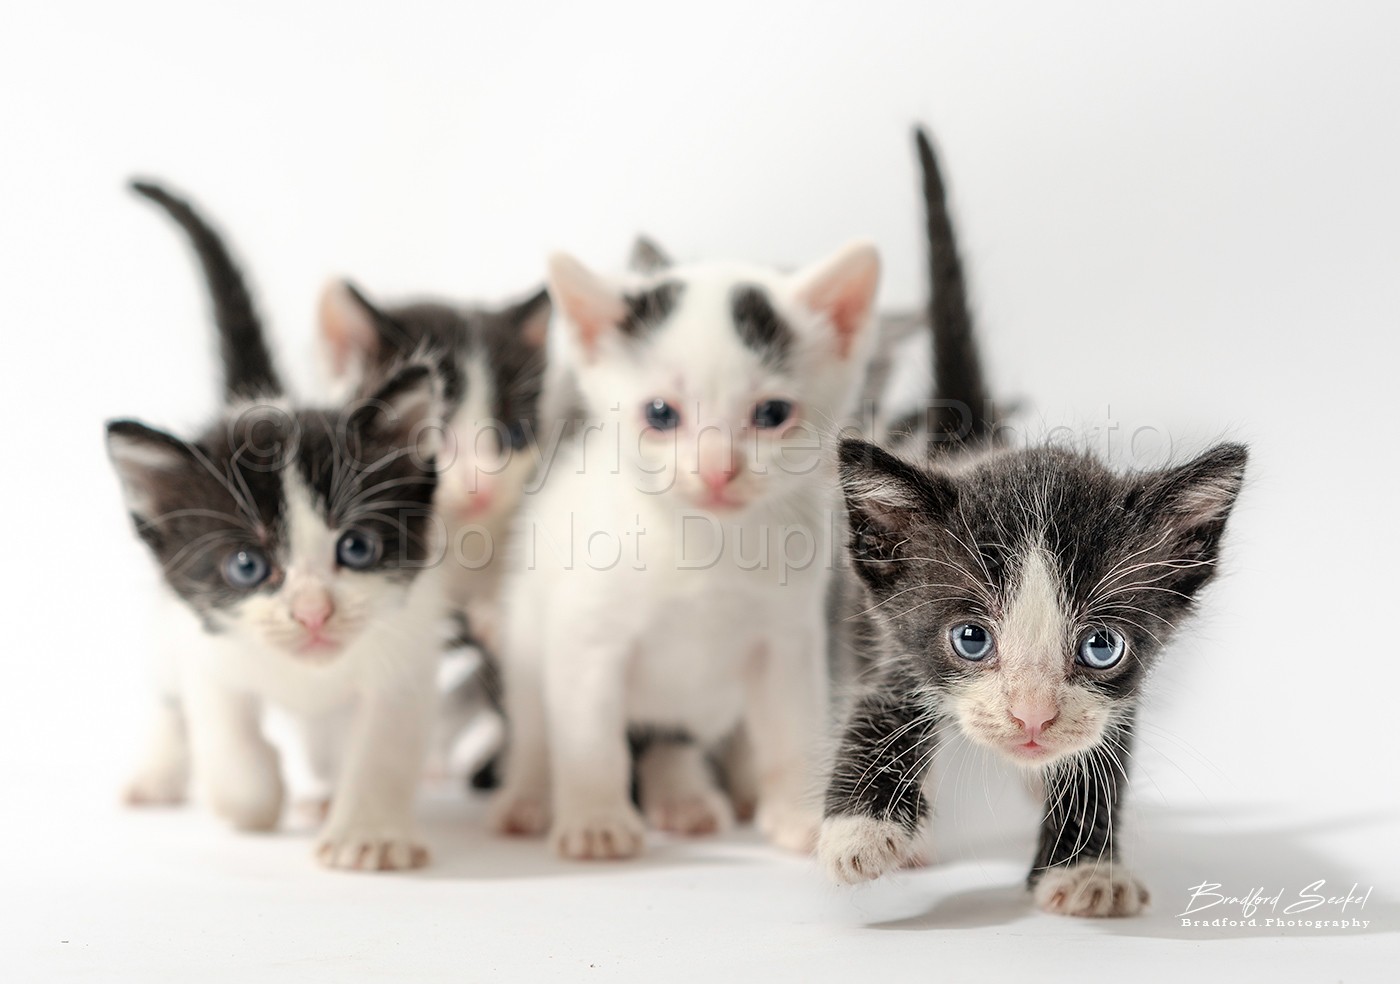 6 Kittens 